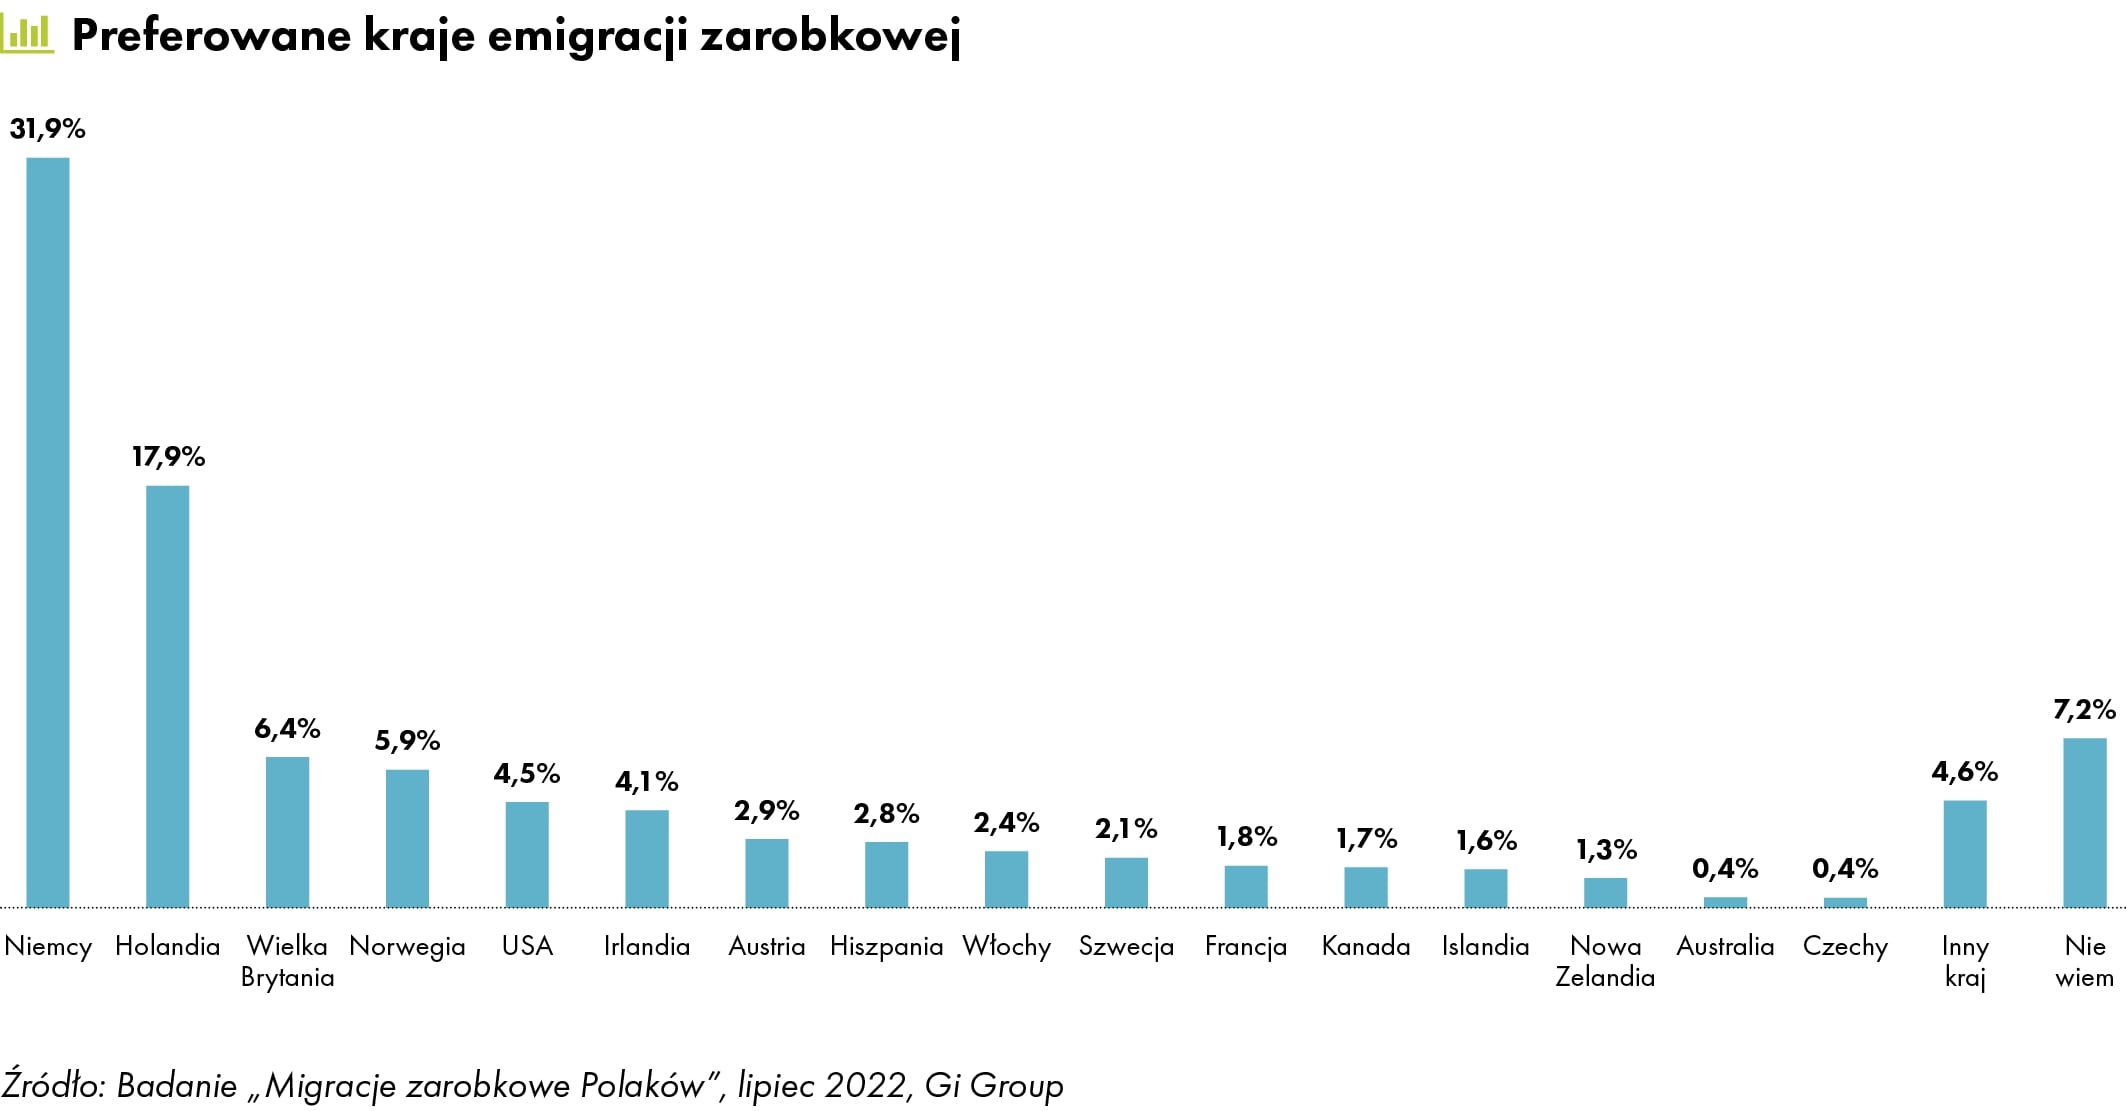 Preferowane kraje emigracji zarobkowej